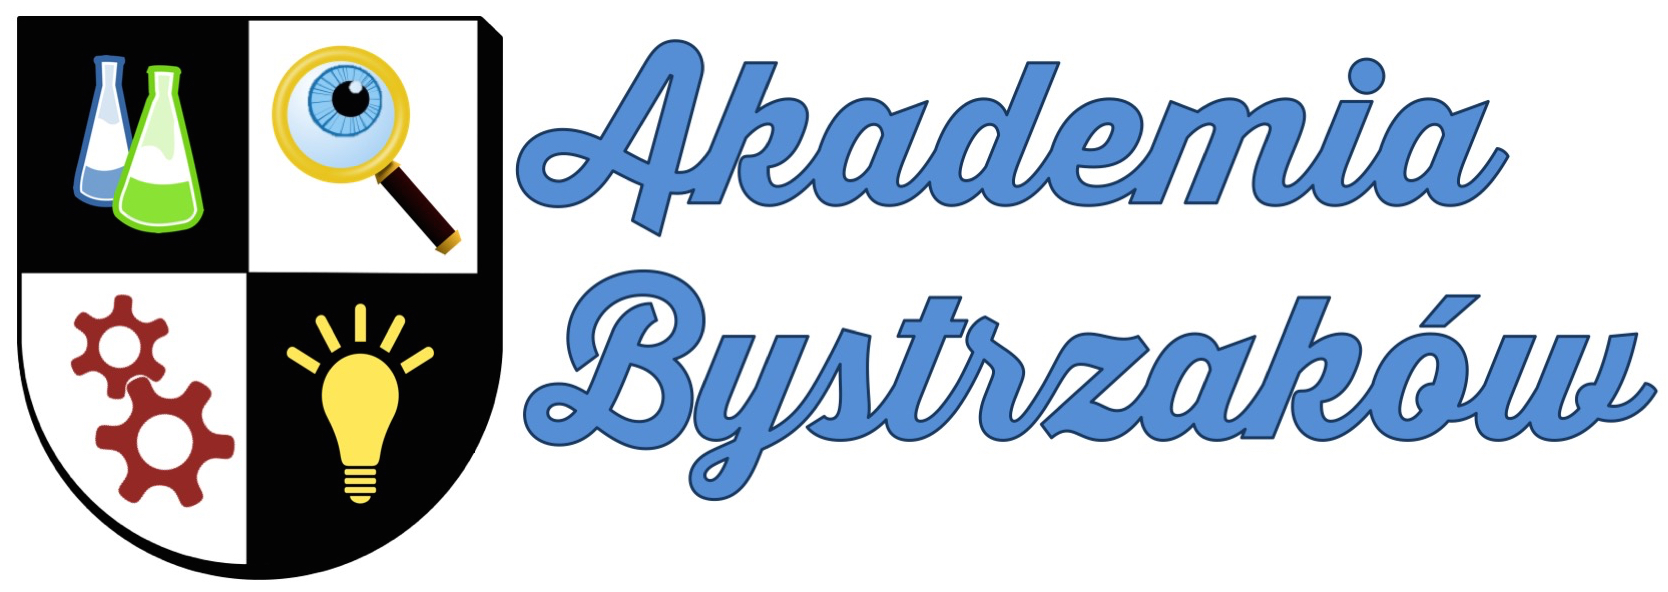 akademia_mystrzaków_logo